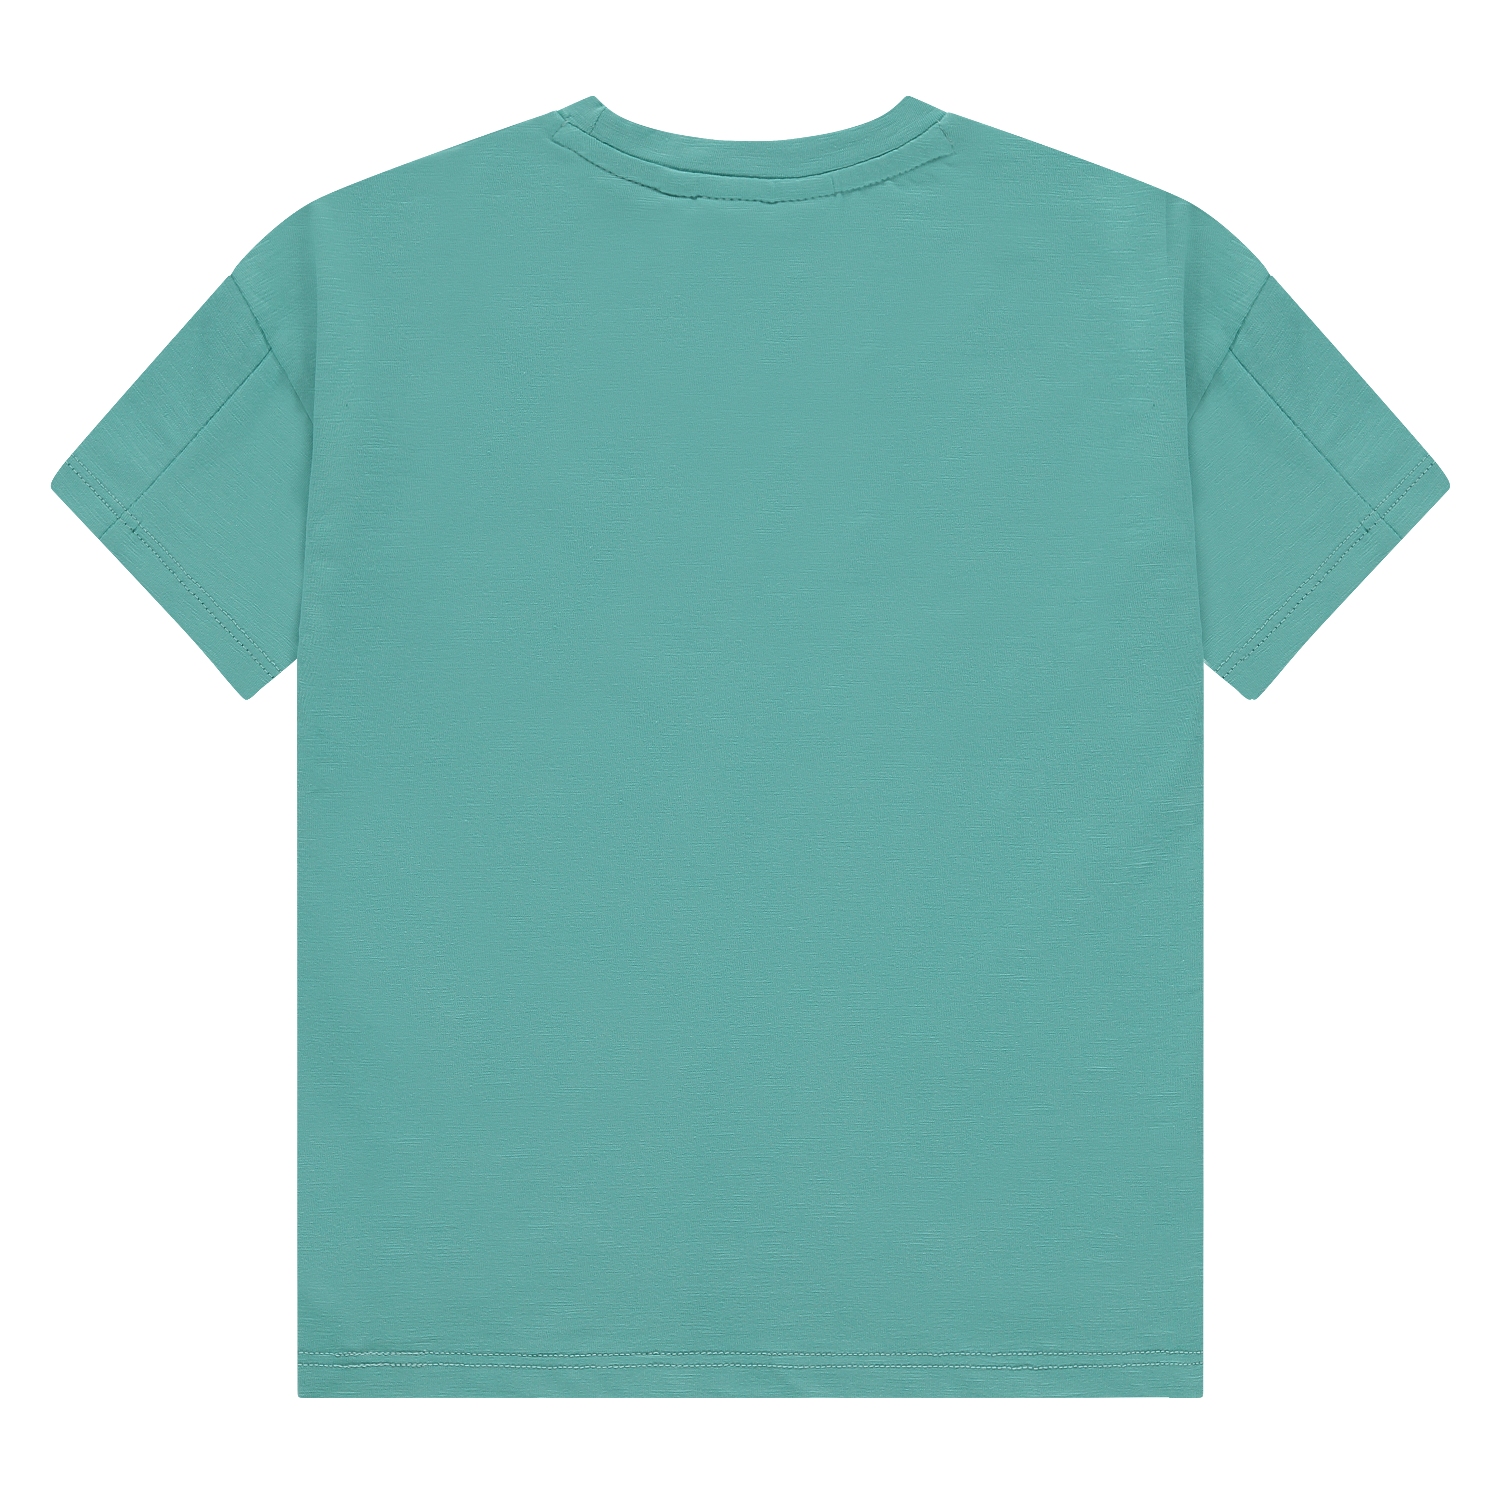 Babyface Boy Shirt turquoise